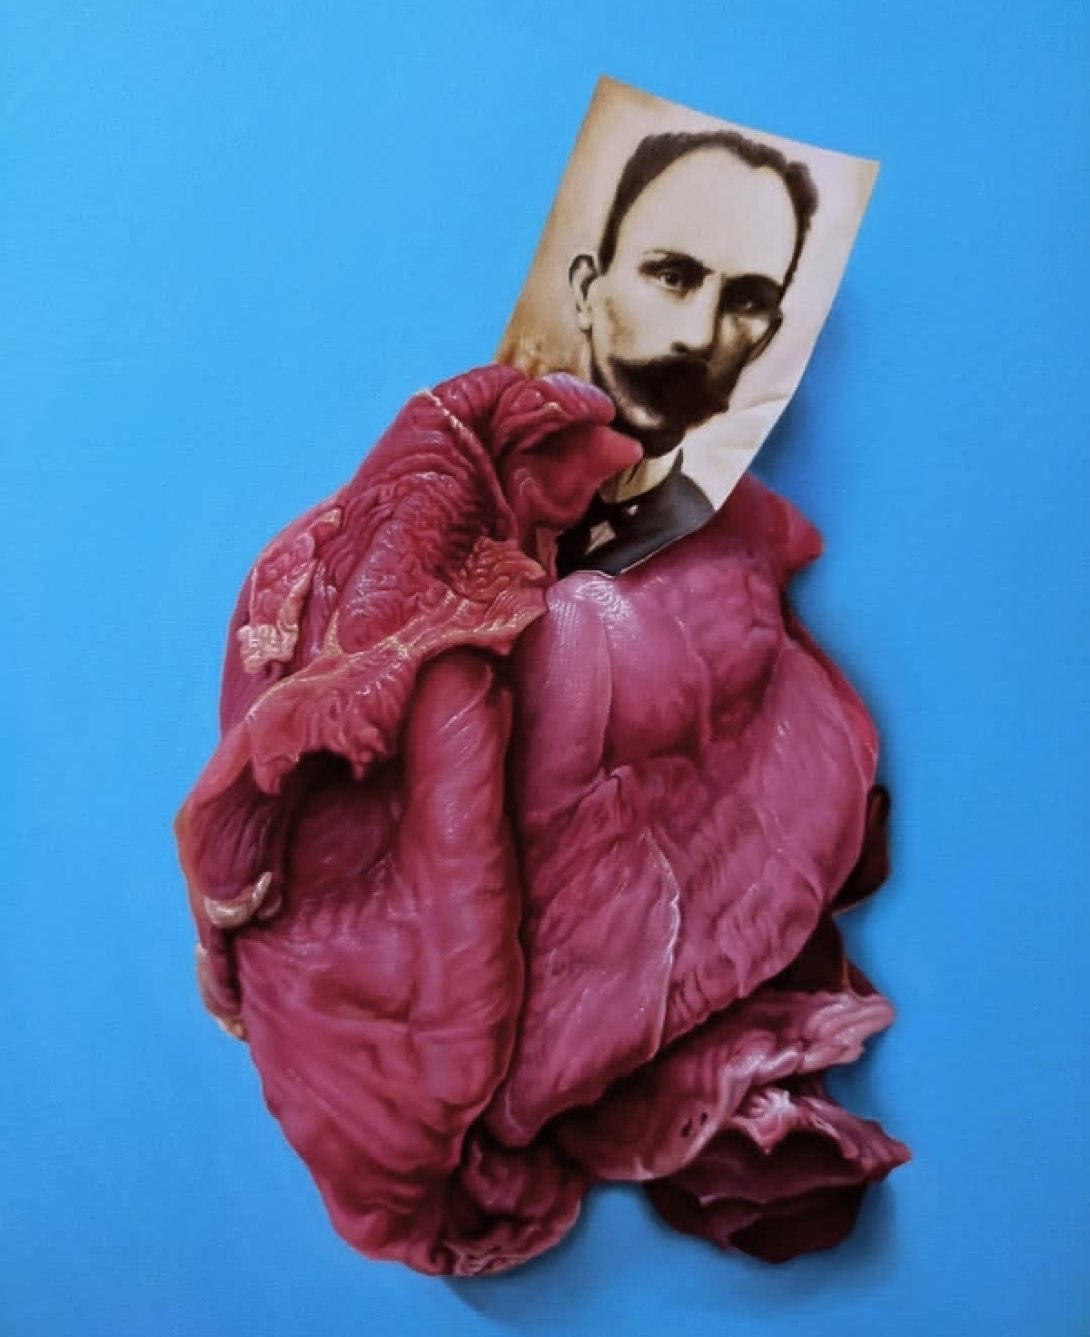 Una foto de Martí entre pedazos de carne.